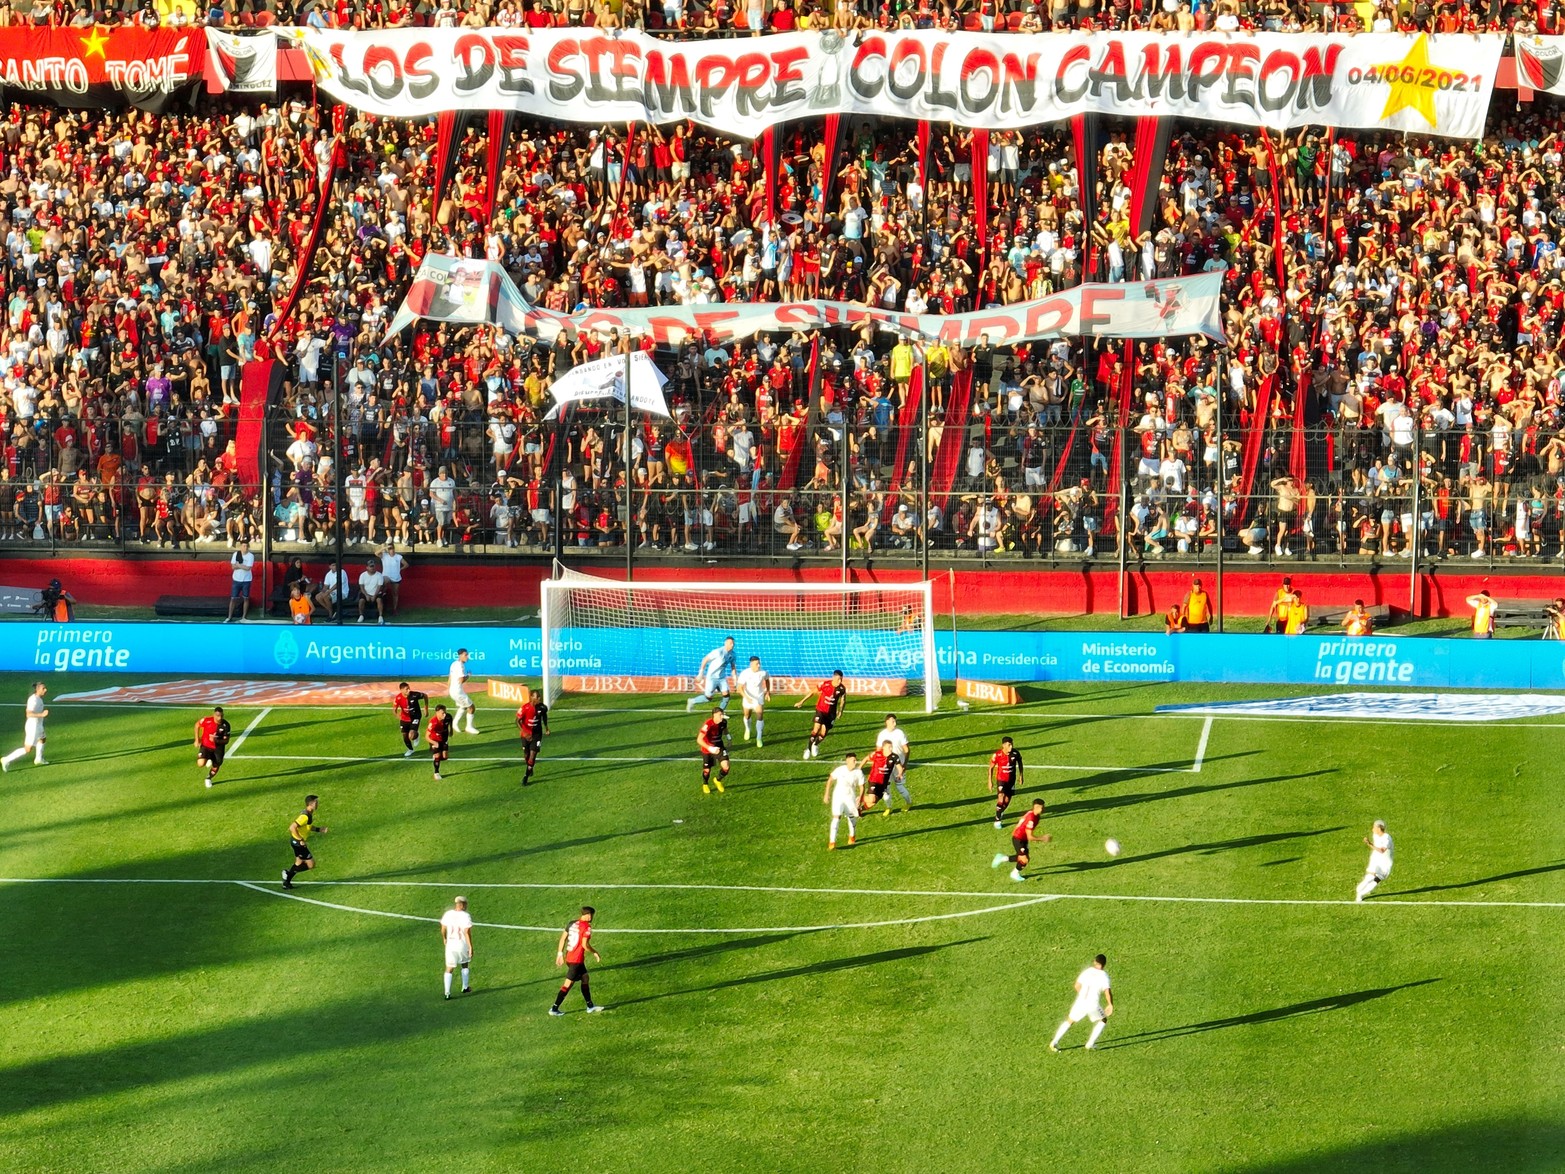 Con el debut de Pipo Gorosito, Colón empató en su cancha 1 a 1 con Huracán